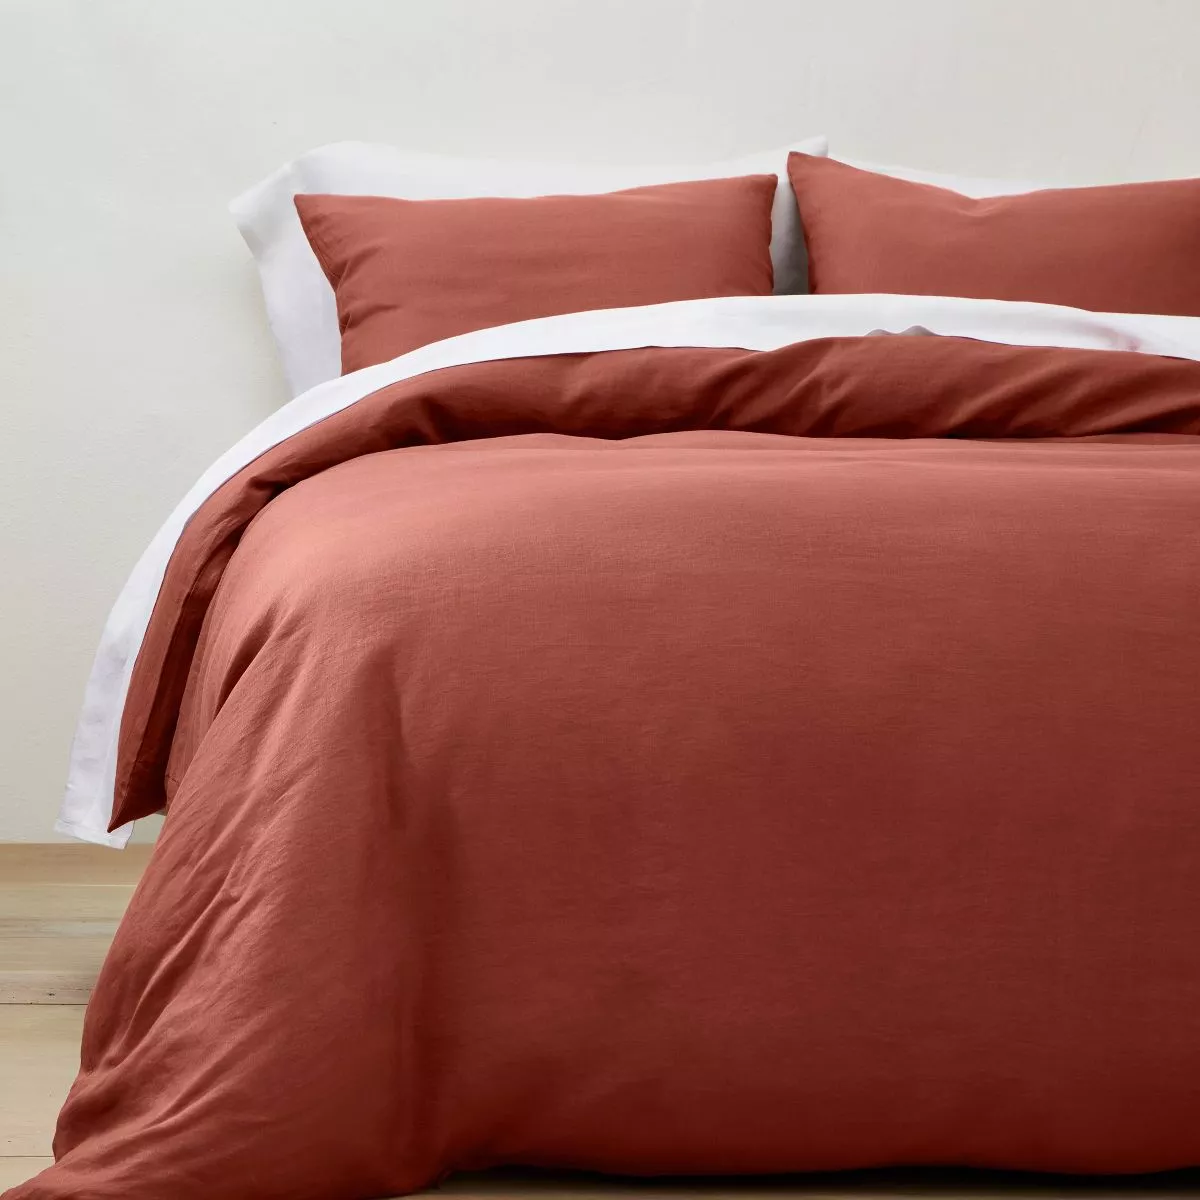 Heavyweight Linen Blend Stripe Comforter & Sham Set - Casaluna